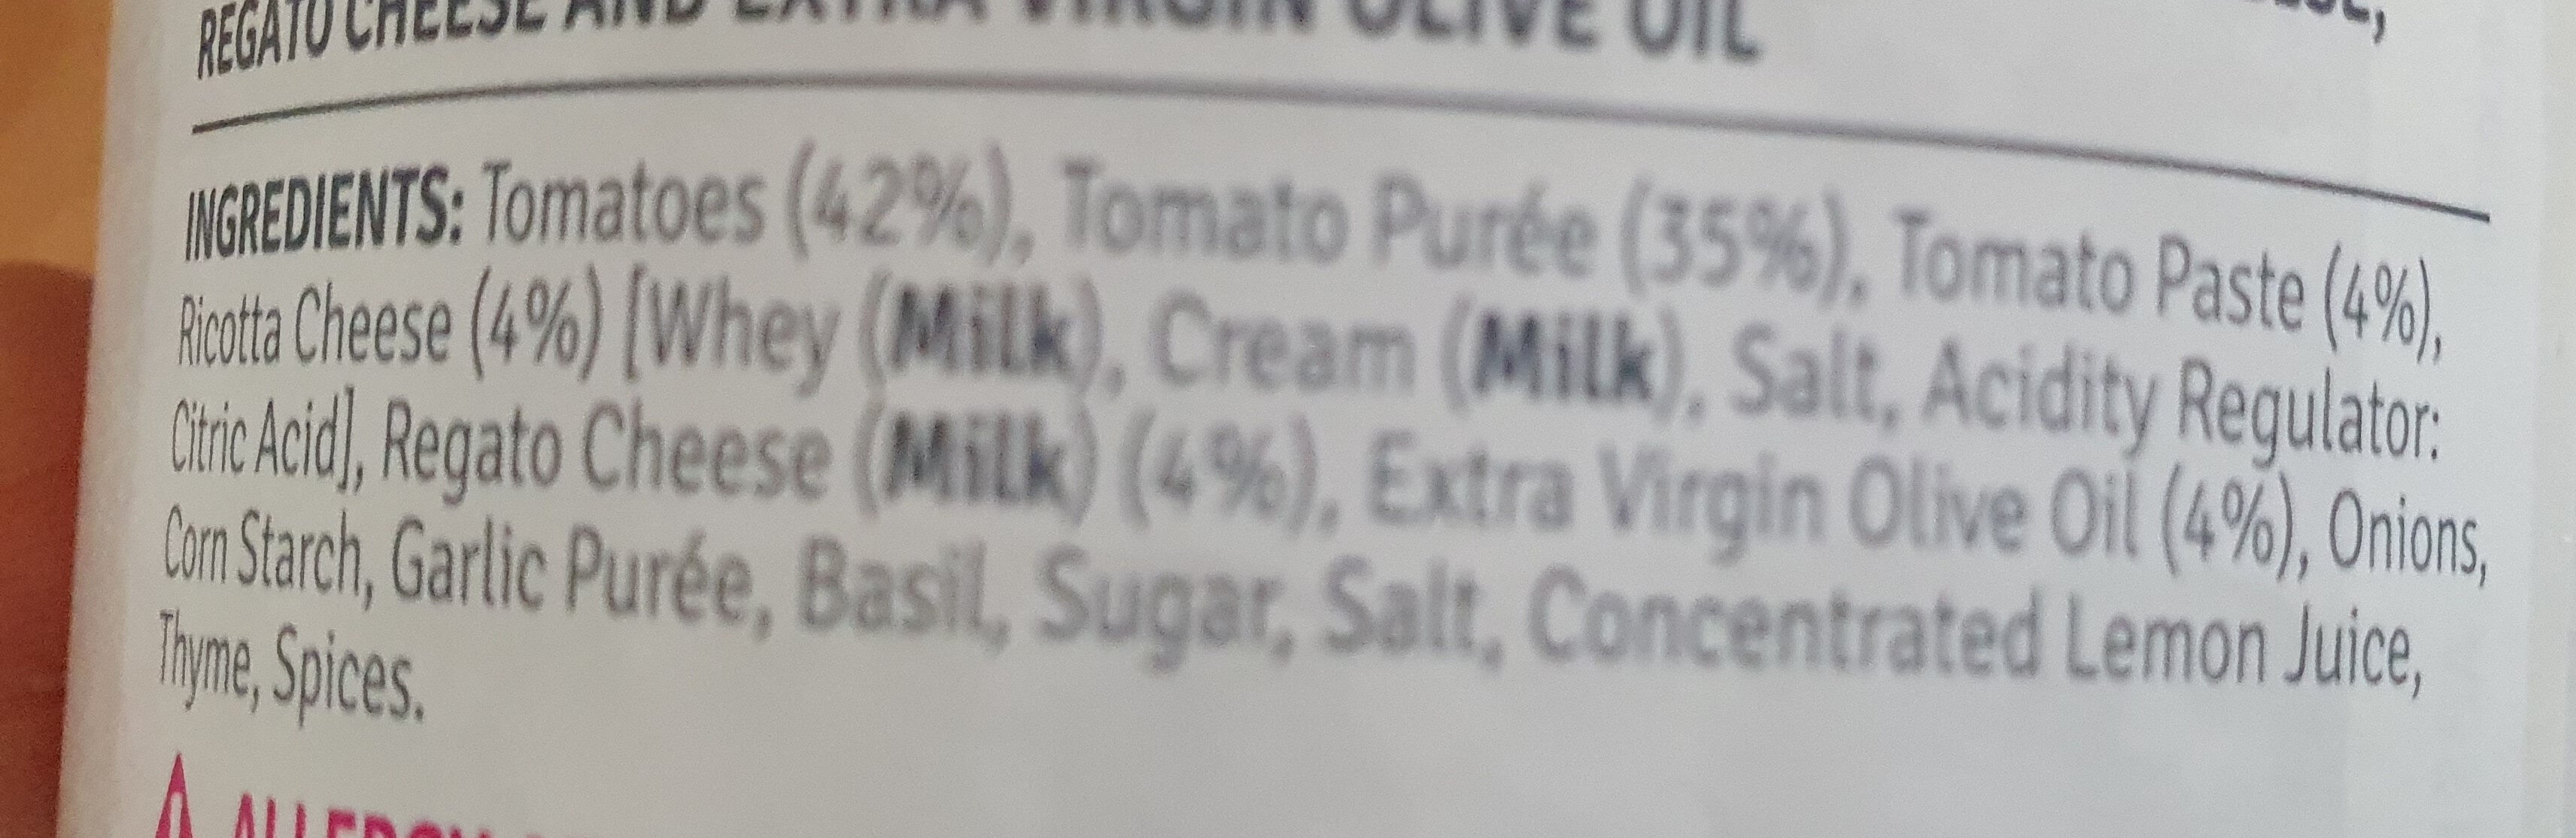 Tomato ricotta & regato - Ingredients